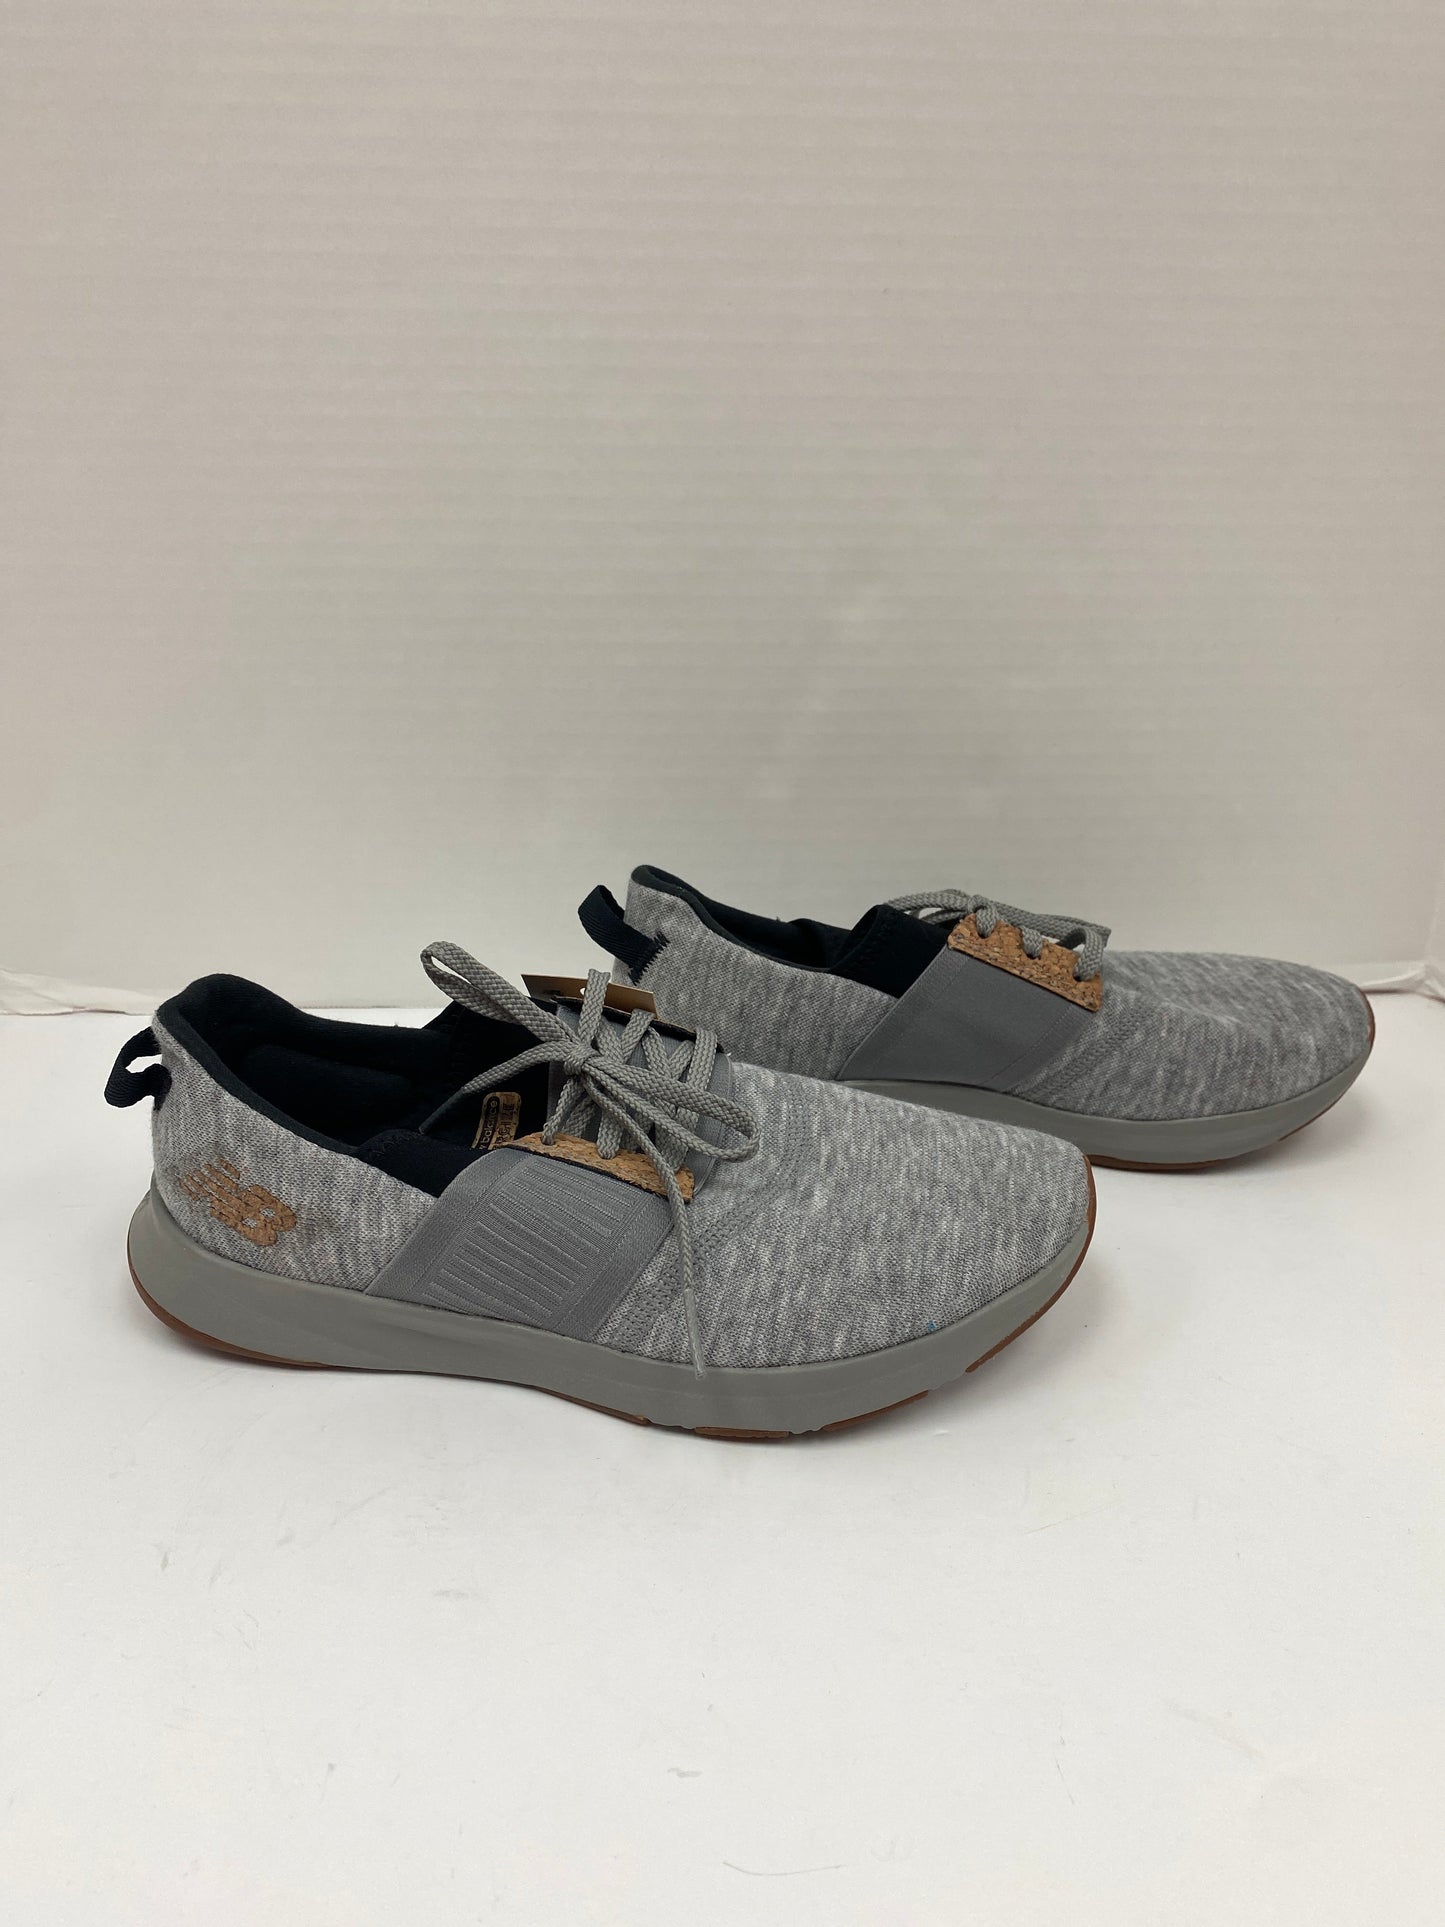 Grey Shoes Athletic New Balance, Size 7